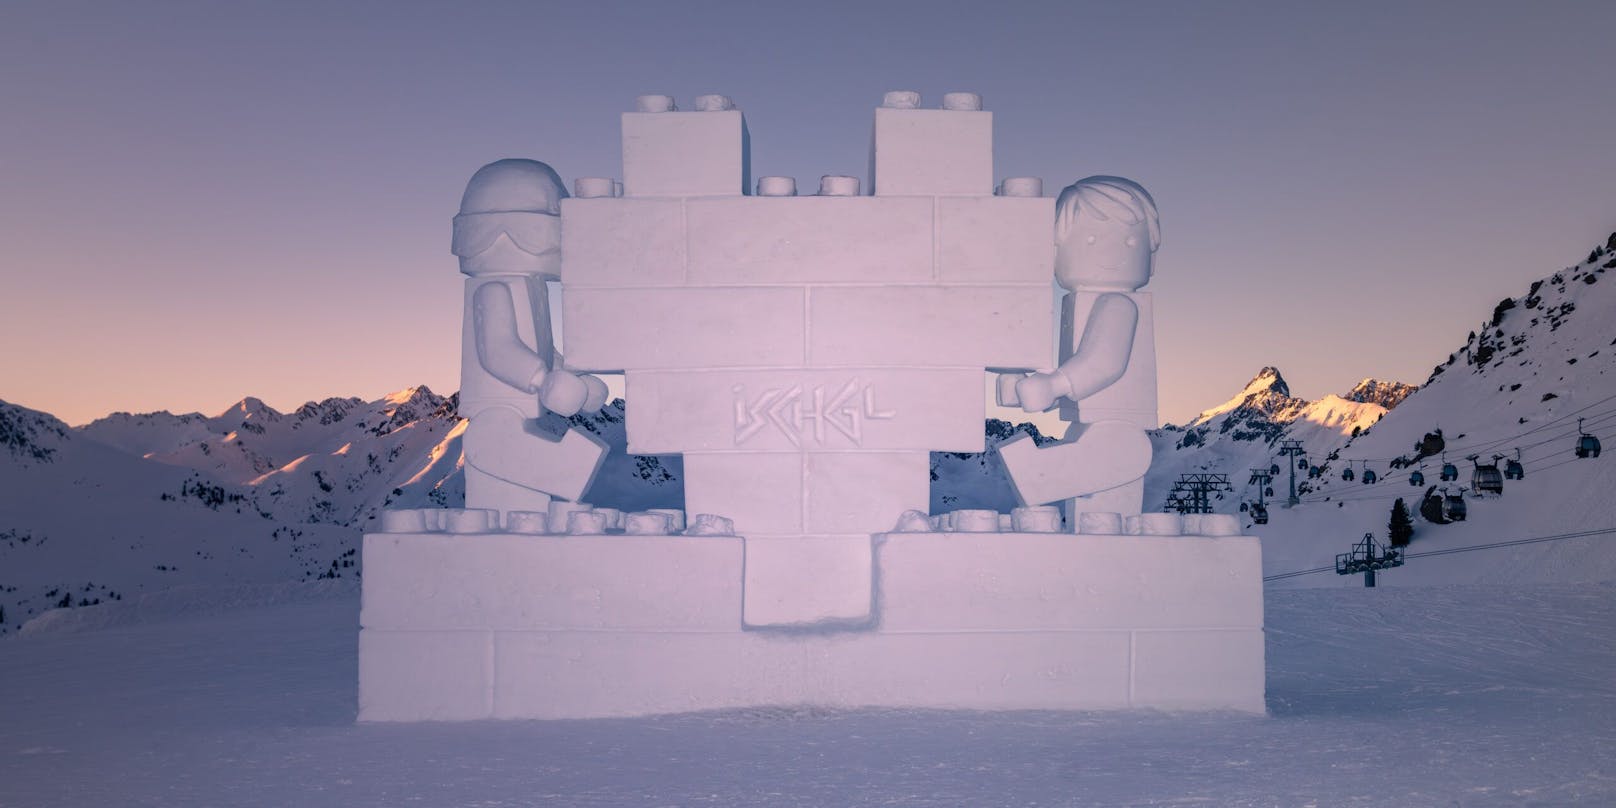 Zehn Künstlerpaare erschufen elf großartige Lego-Kunstwerke aus Eis und Schnee.